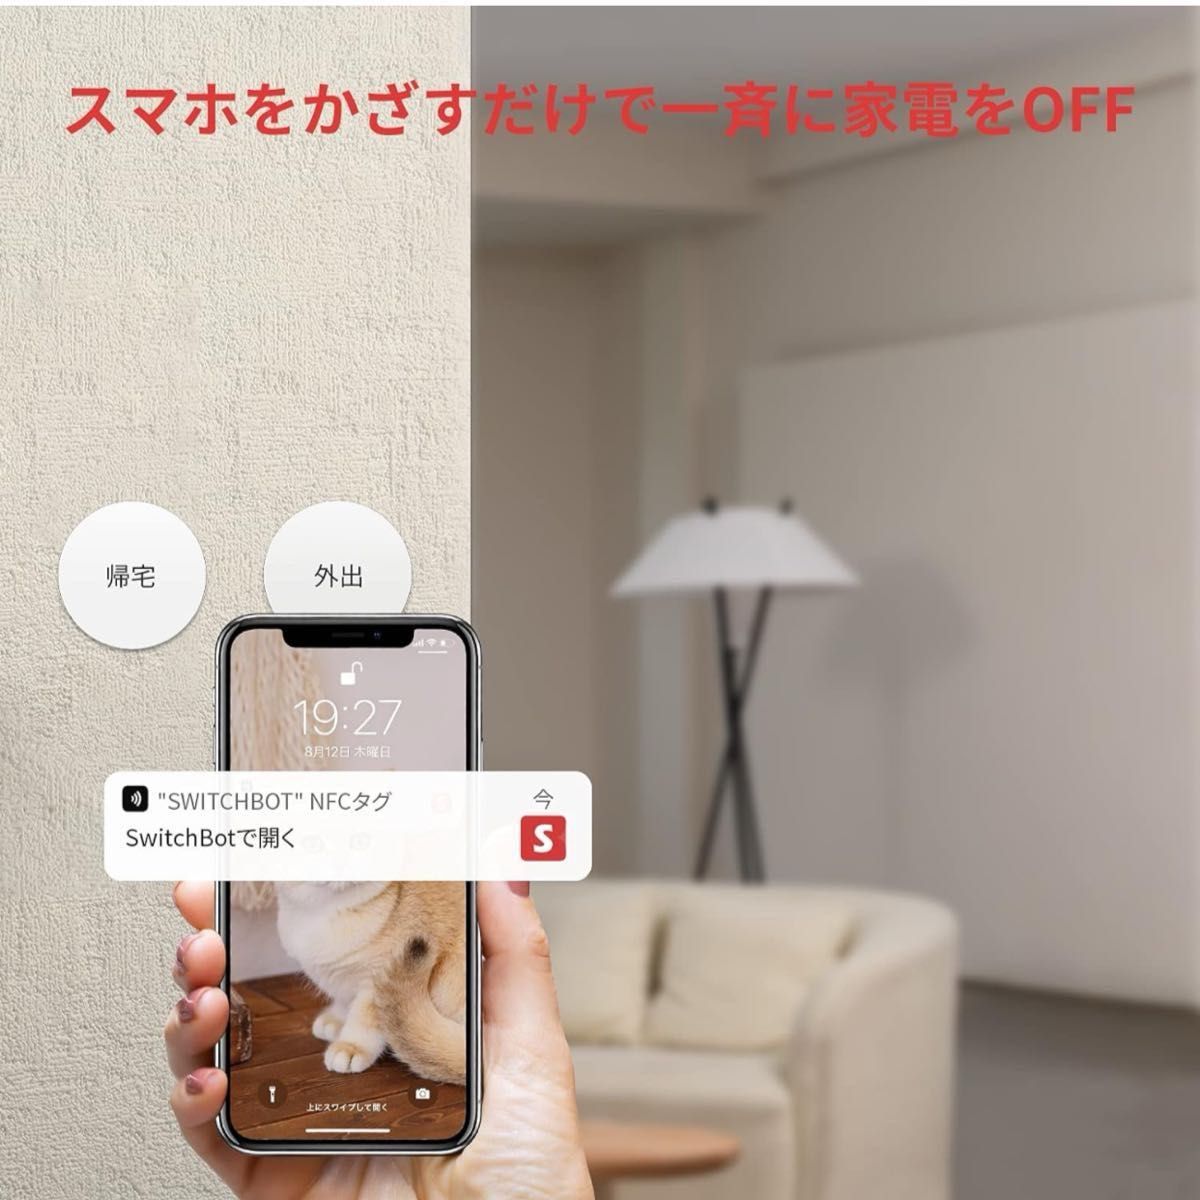 SwitchBot NFCタグ スイッチボット シール  ×3セット新品未開封品